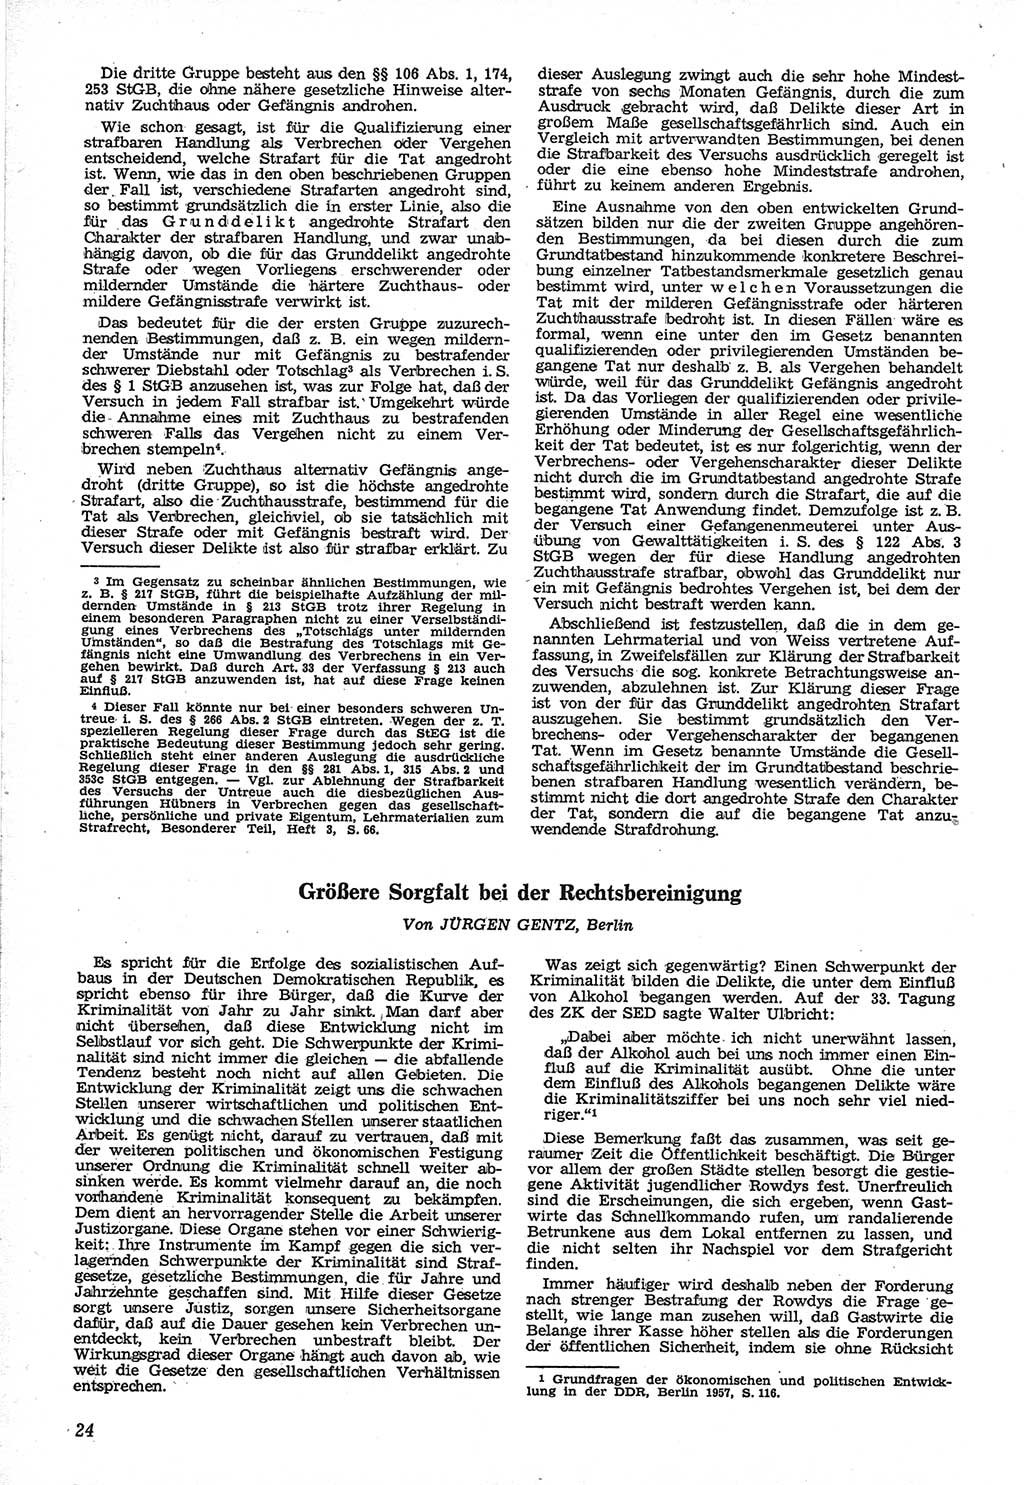 Neue Justiz (NJ), Zeitschrift für Recht und Rechtswissenschaft [Deutsche Demokratische Republik (DDR)], 12. Jahrgang 1958, Seite 24 (NJ DDR 1958, S. 24)